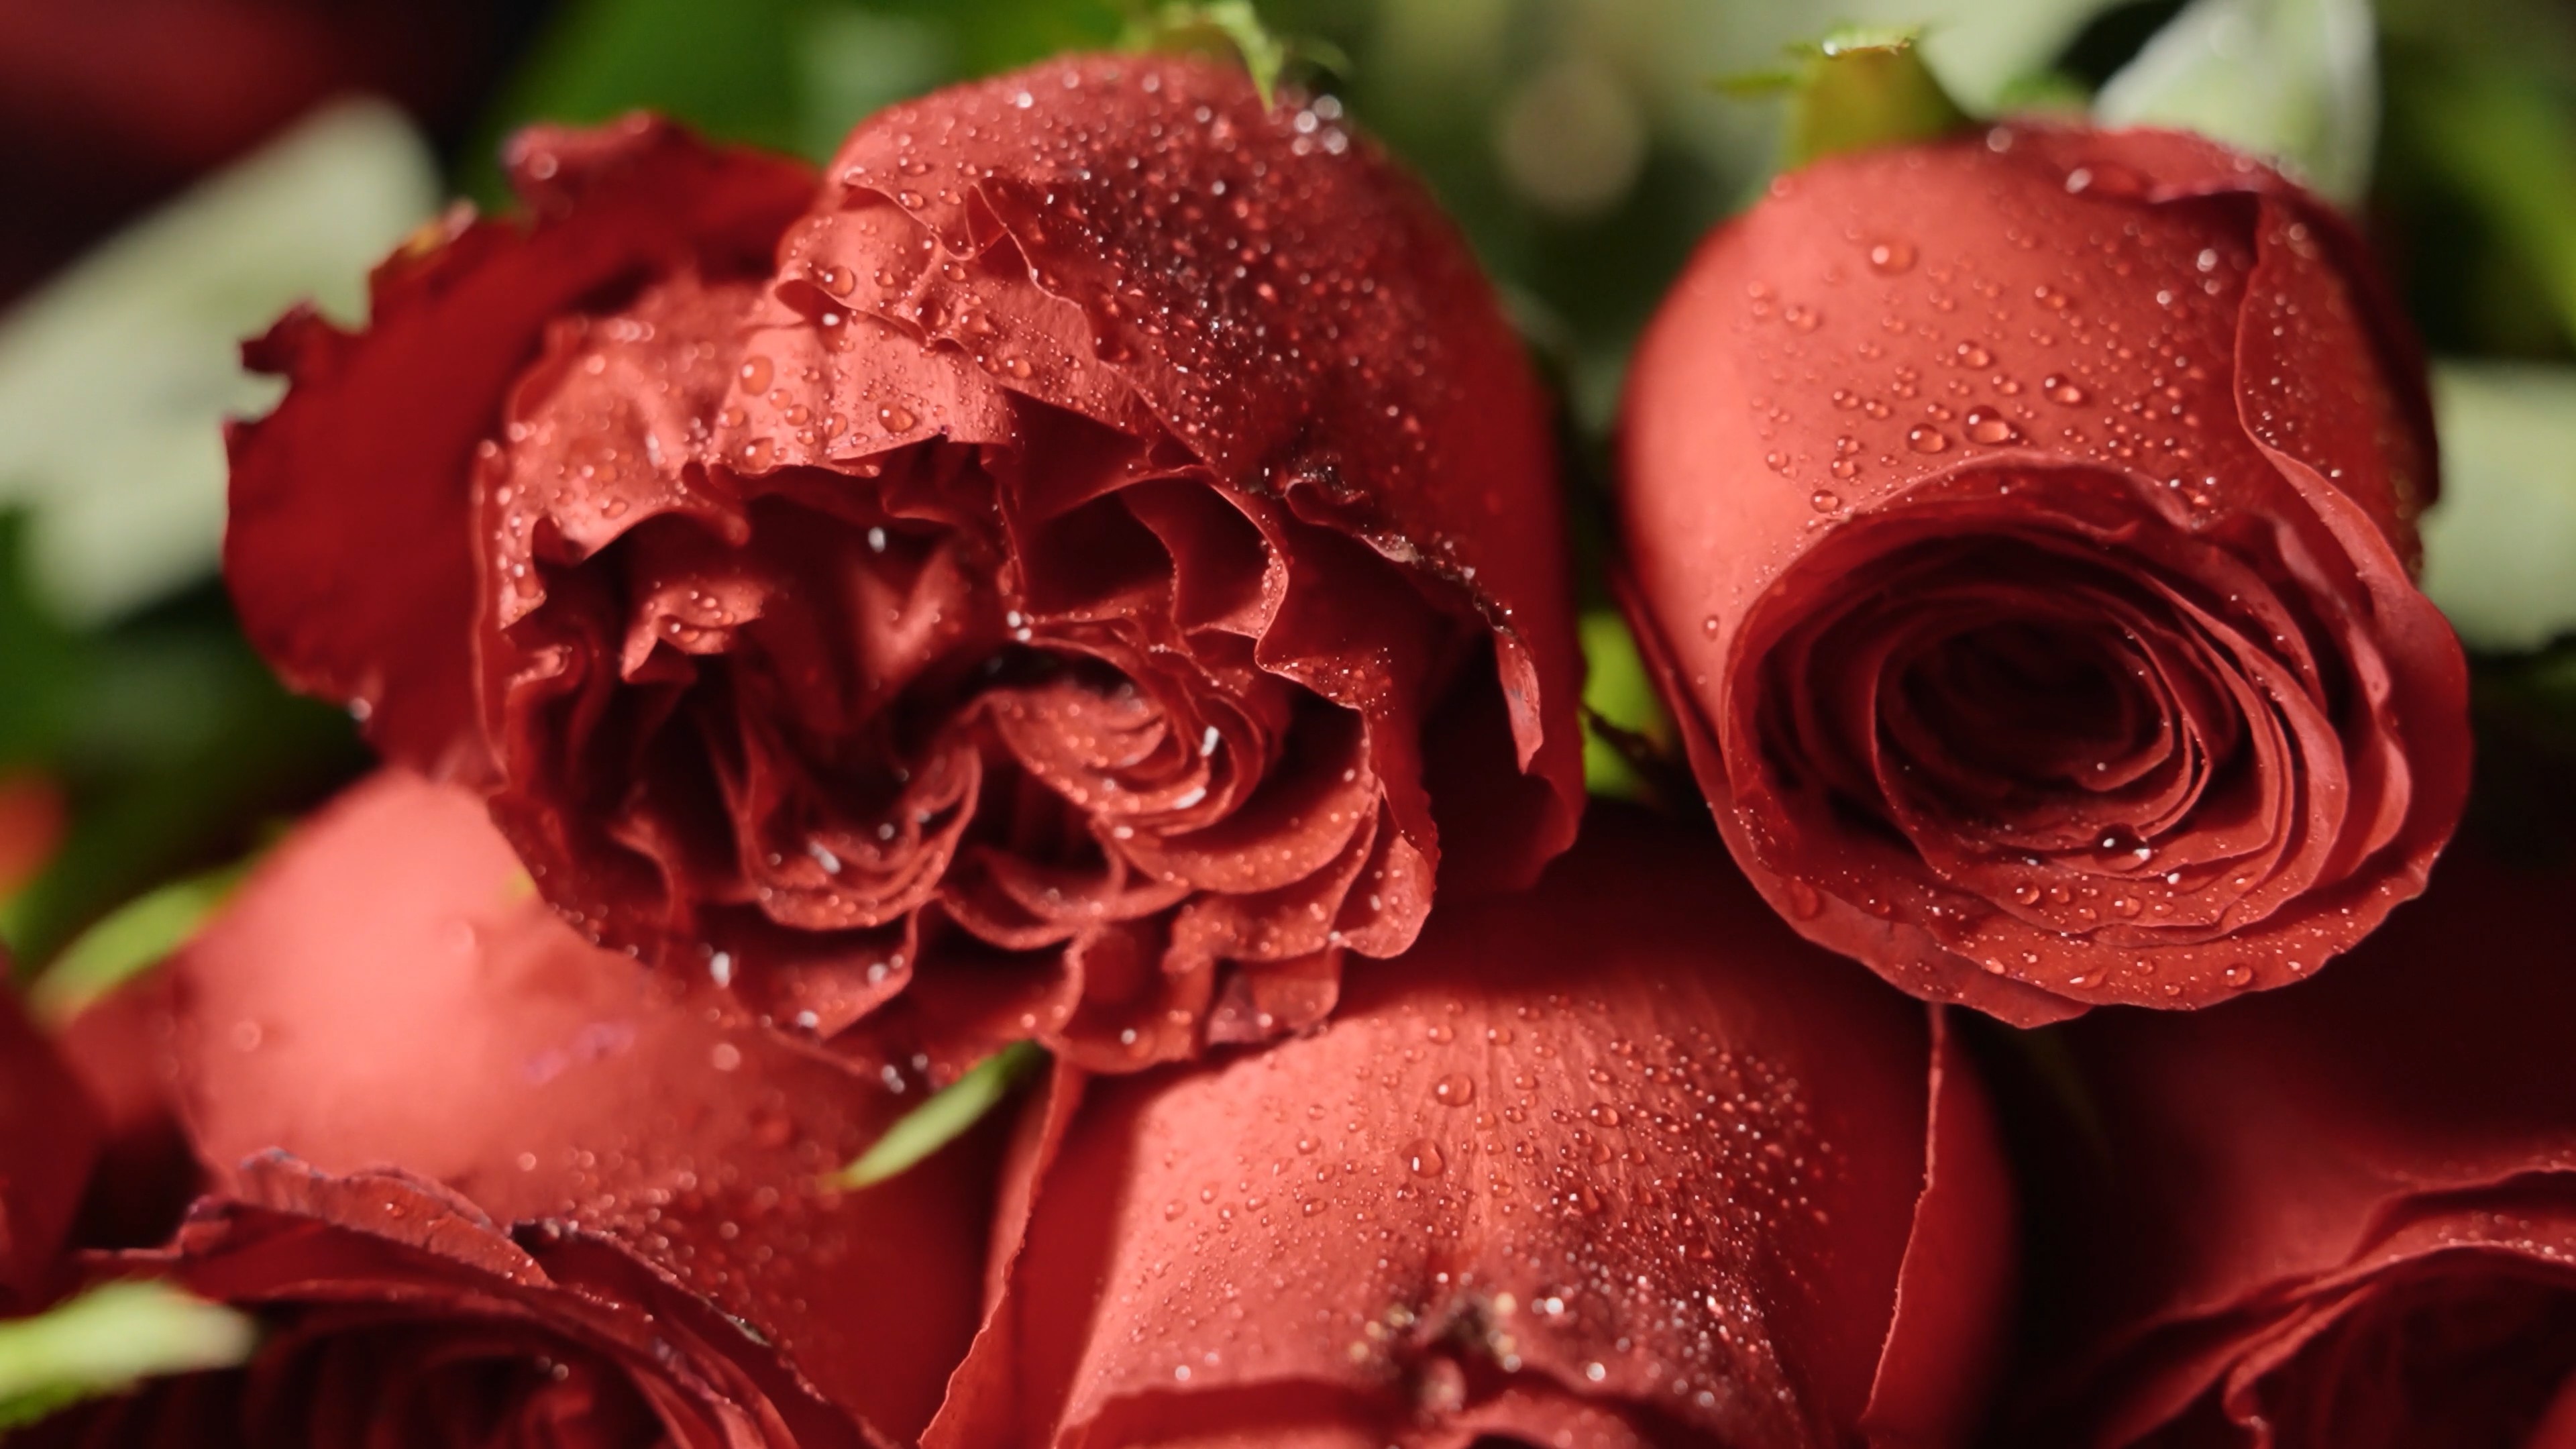 高清晰植物爱情之花-红玫瑰图片壁纸